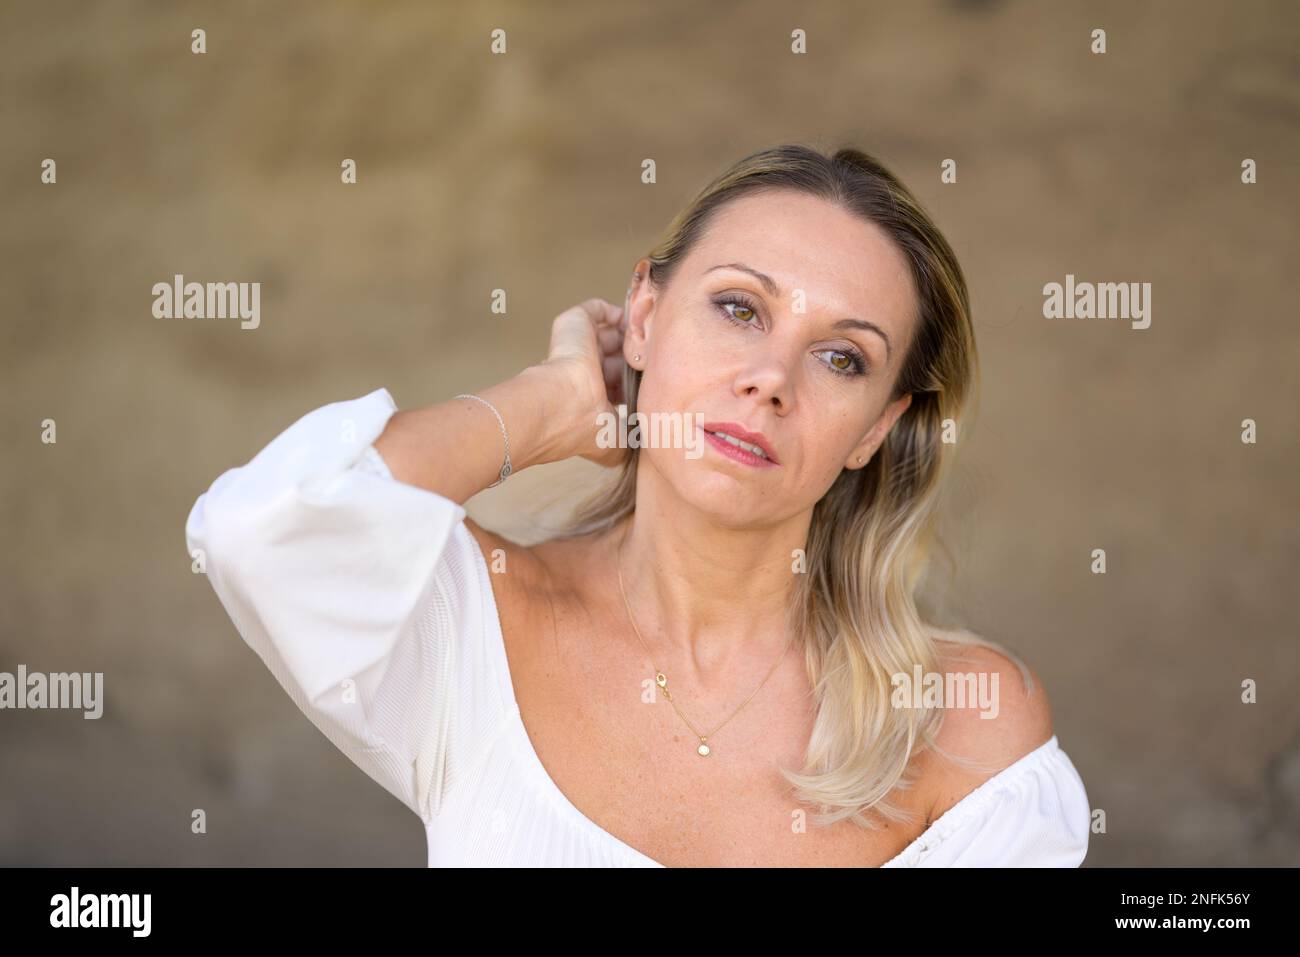 Das Porträt einer blonden Frau mittleren Alters mit einer weißen Bluse führt eine Hand durch ihr Haar mit einem durchdachten Gesichtsausdruck vor einer braunen Wand Stockfoto